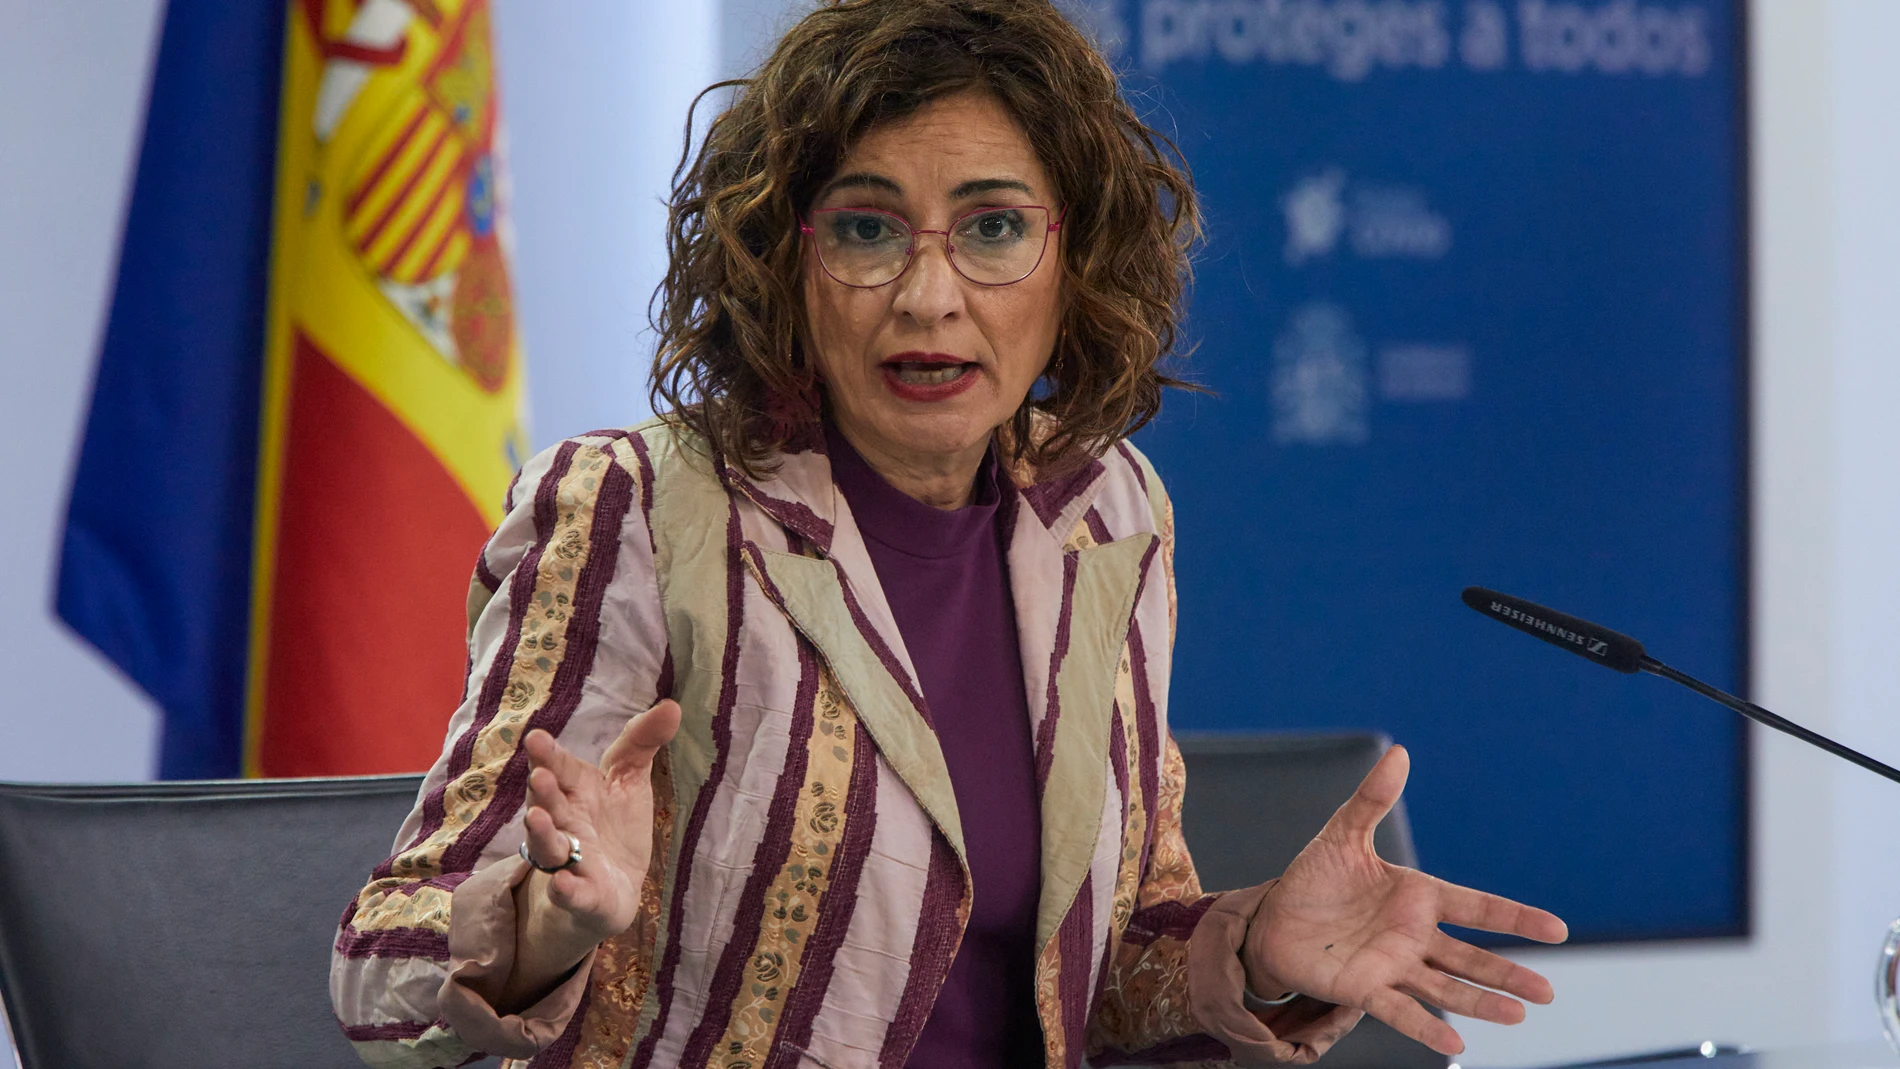 La ministra de Hacienda y portavoz del Gobierno, María Jesús Montero, interviene en una rueda de prensa tras la reunión del Consejo de Ministros